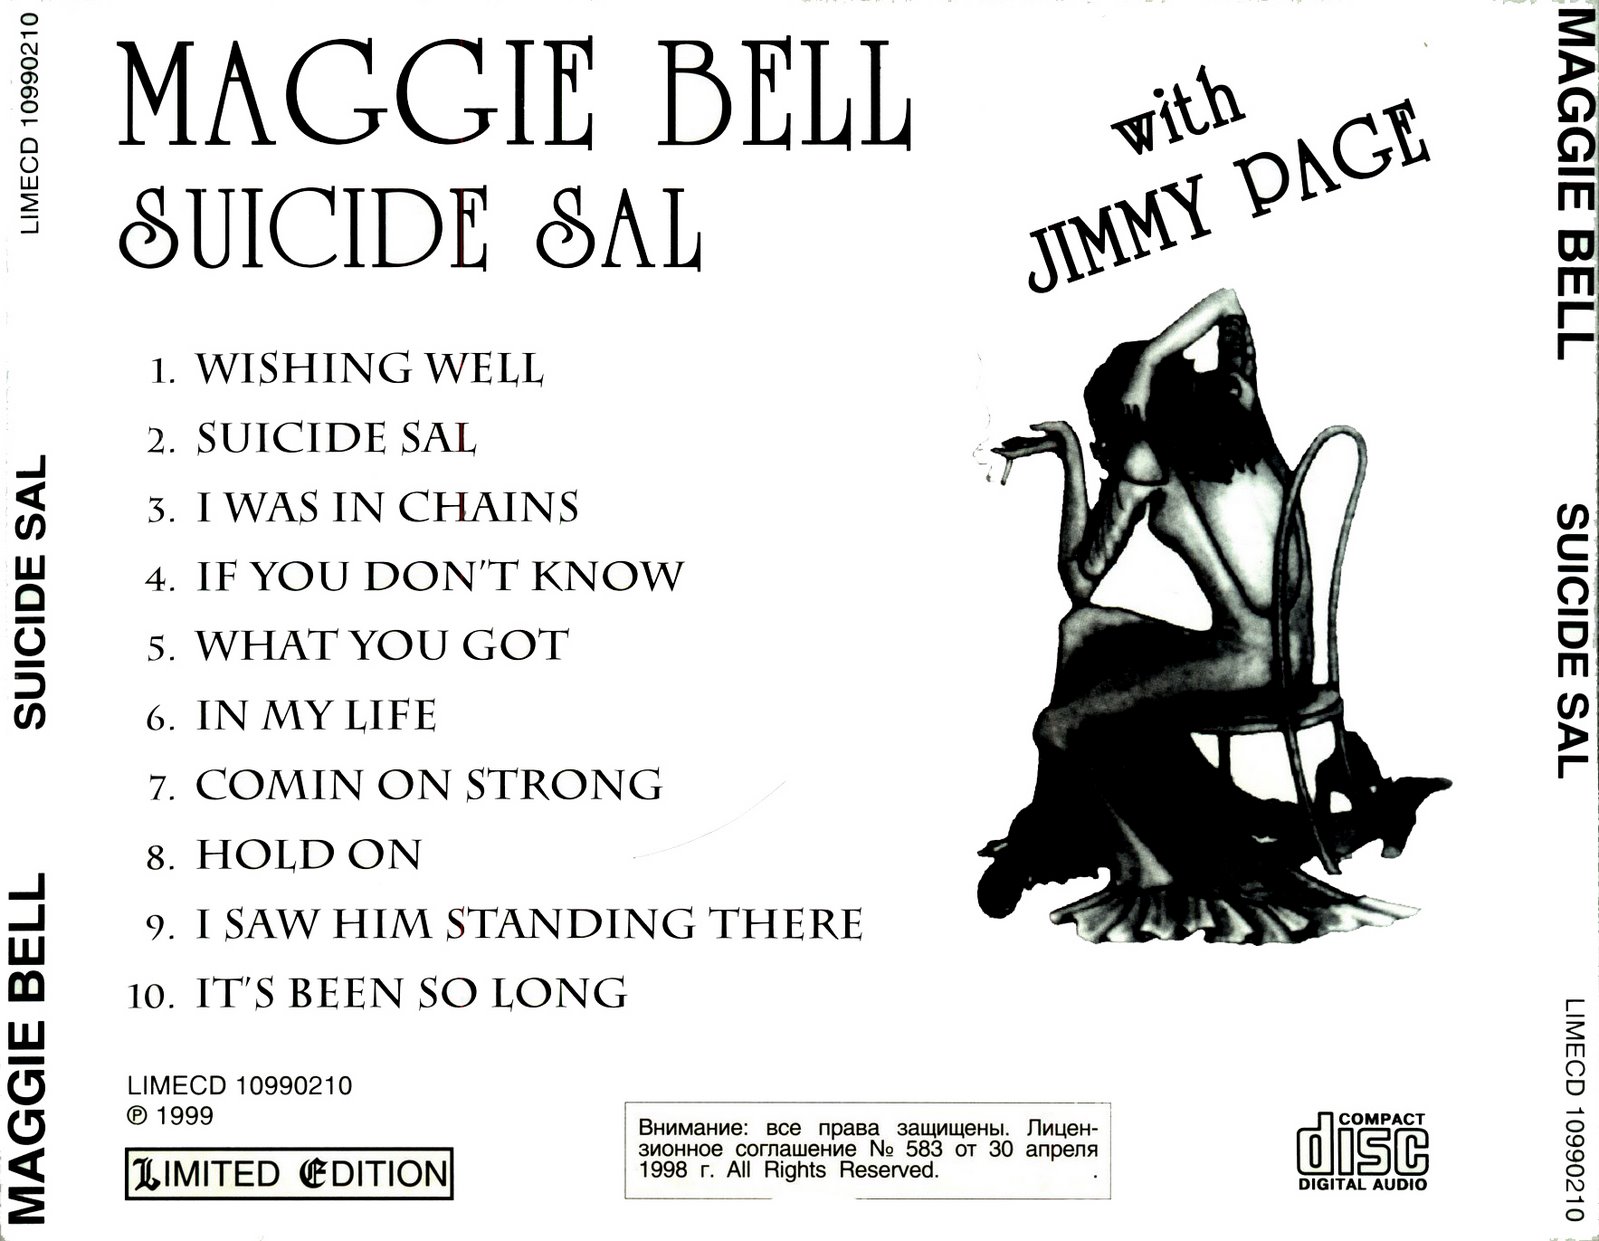 [Maggie+Bell+-+1975+Sicide+Sal_back.jpg]